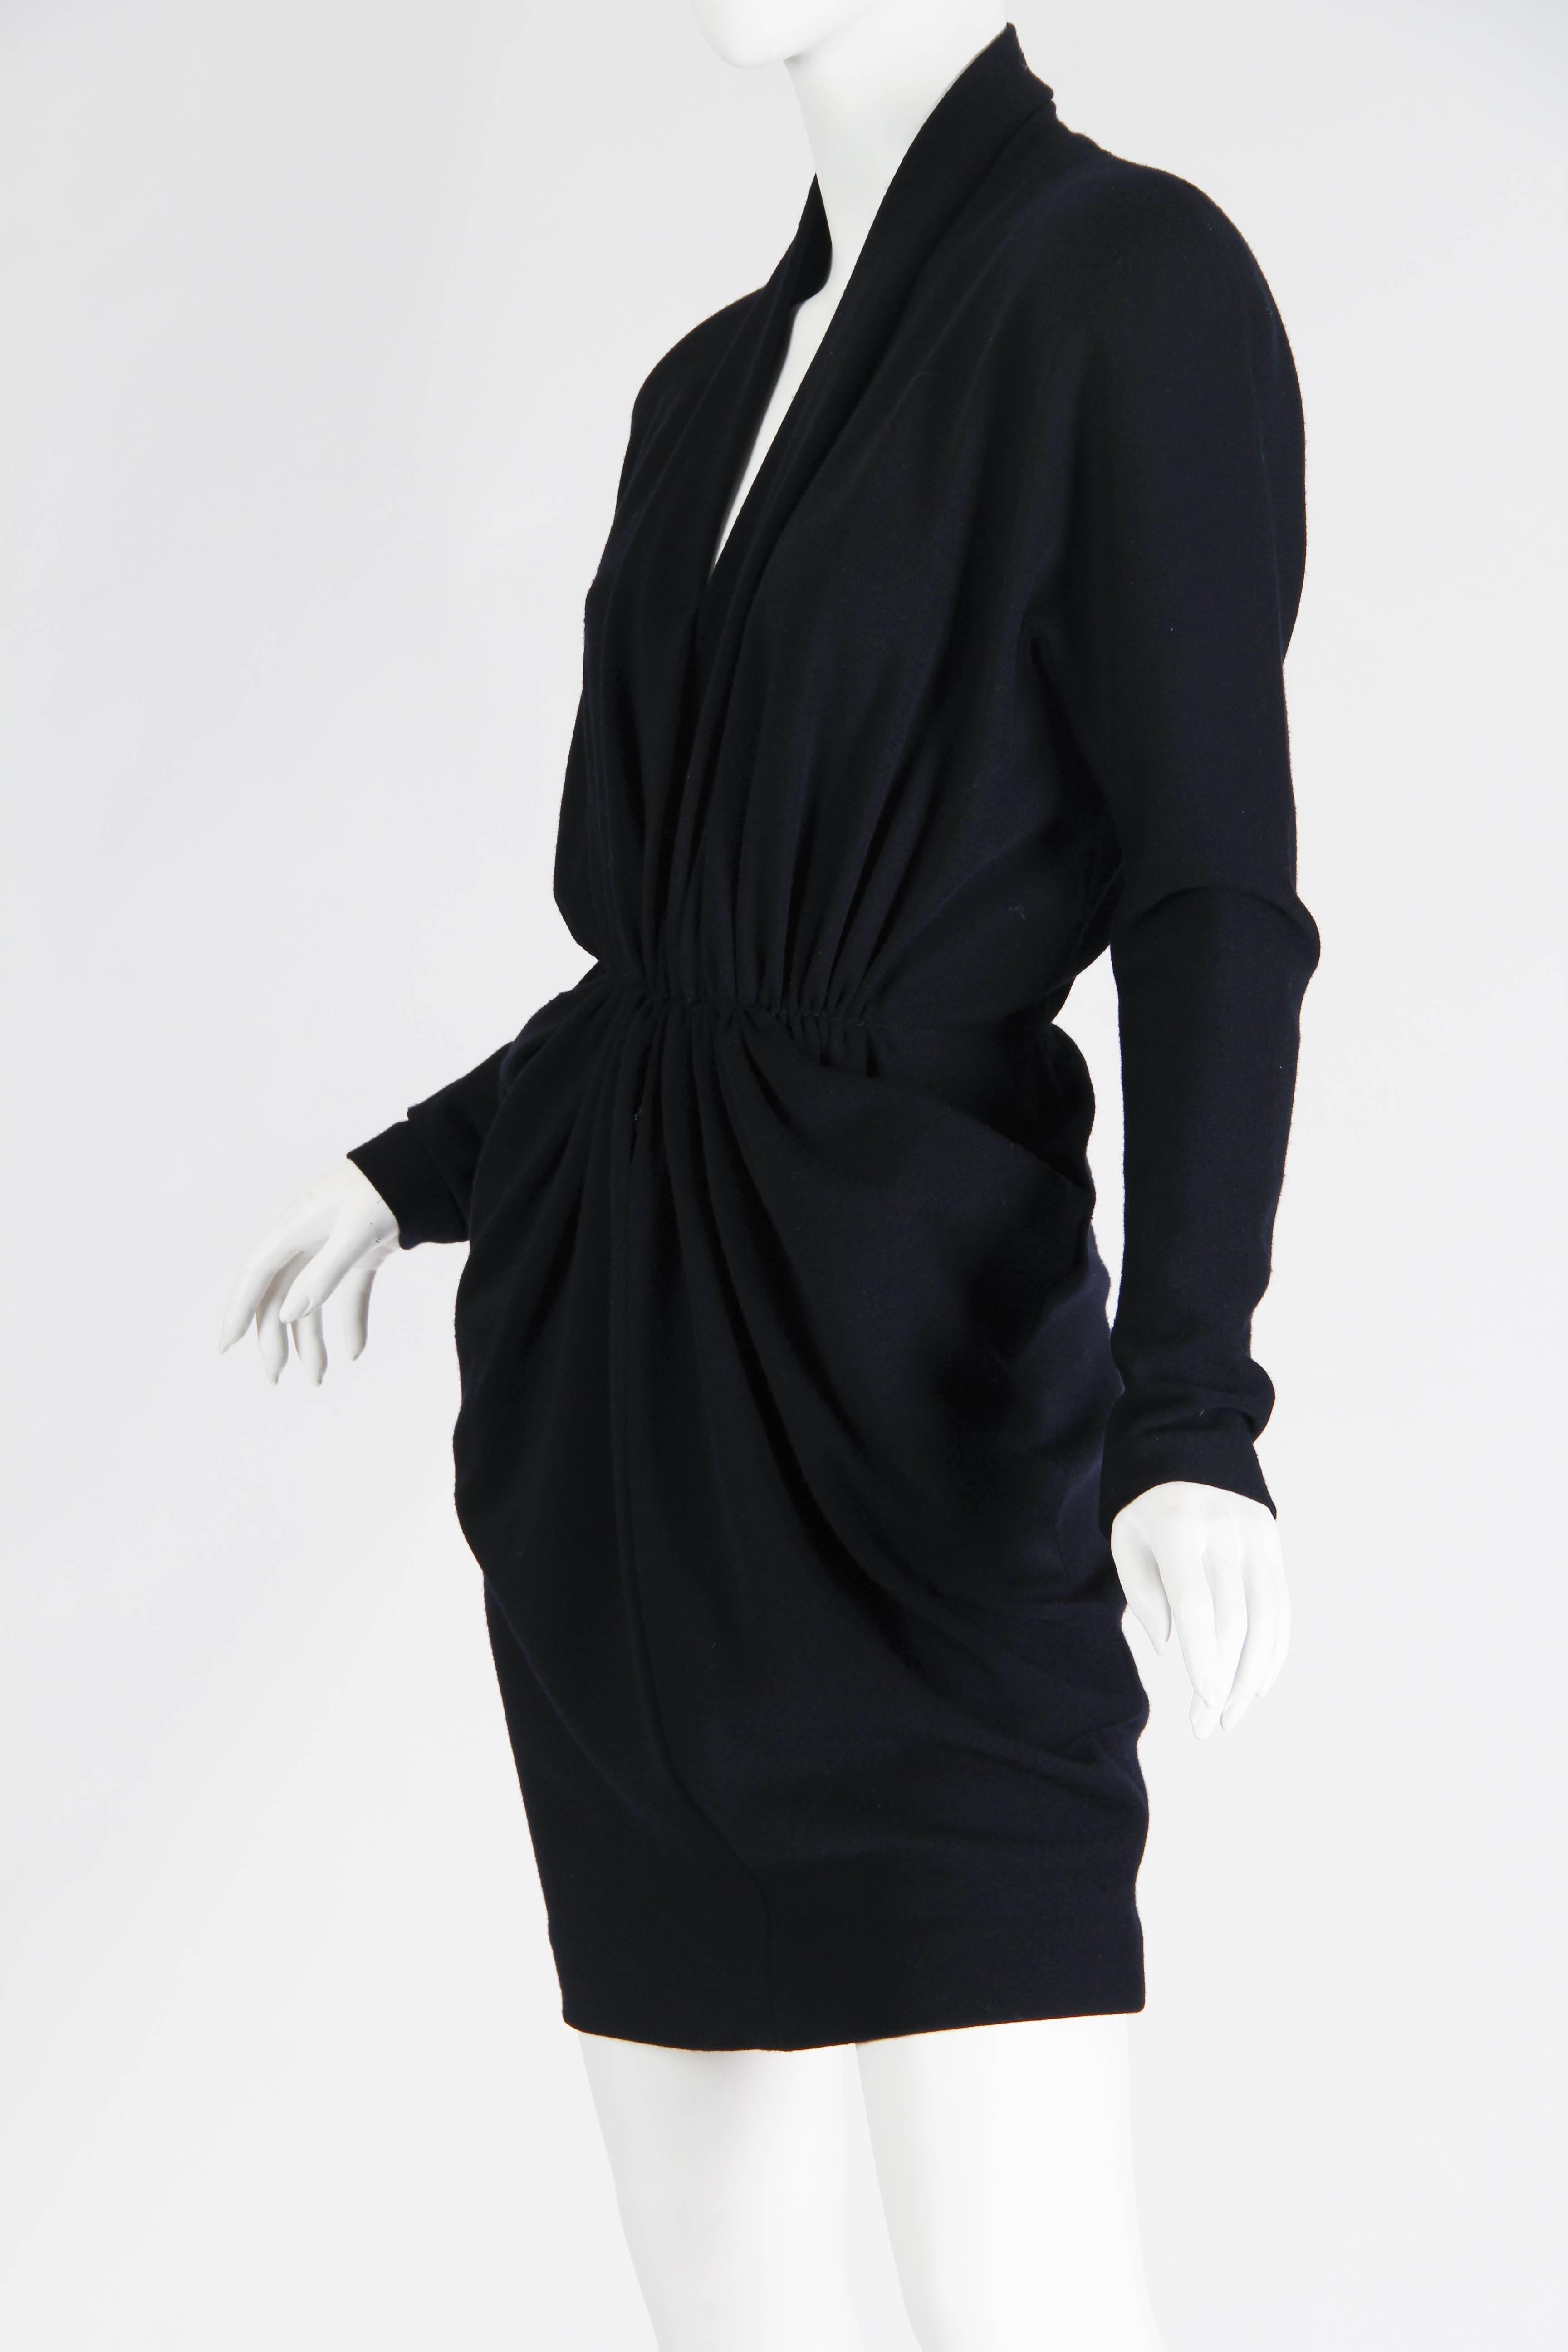 1980s Donna Karan Wool Jersey Dress with Plunging Neckline 2